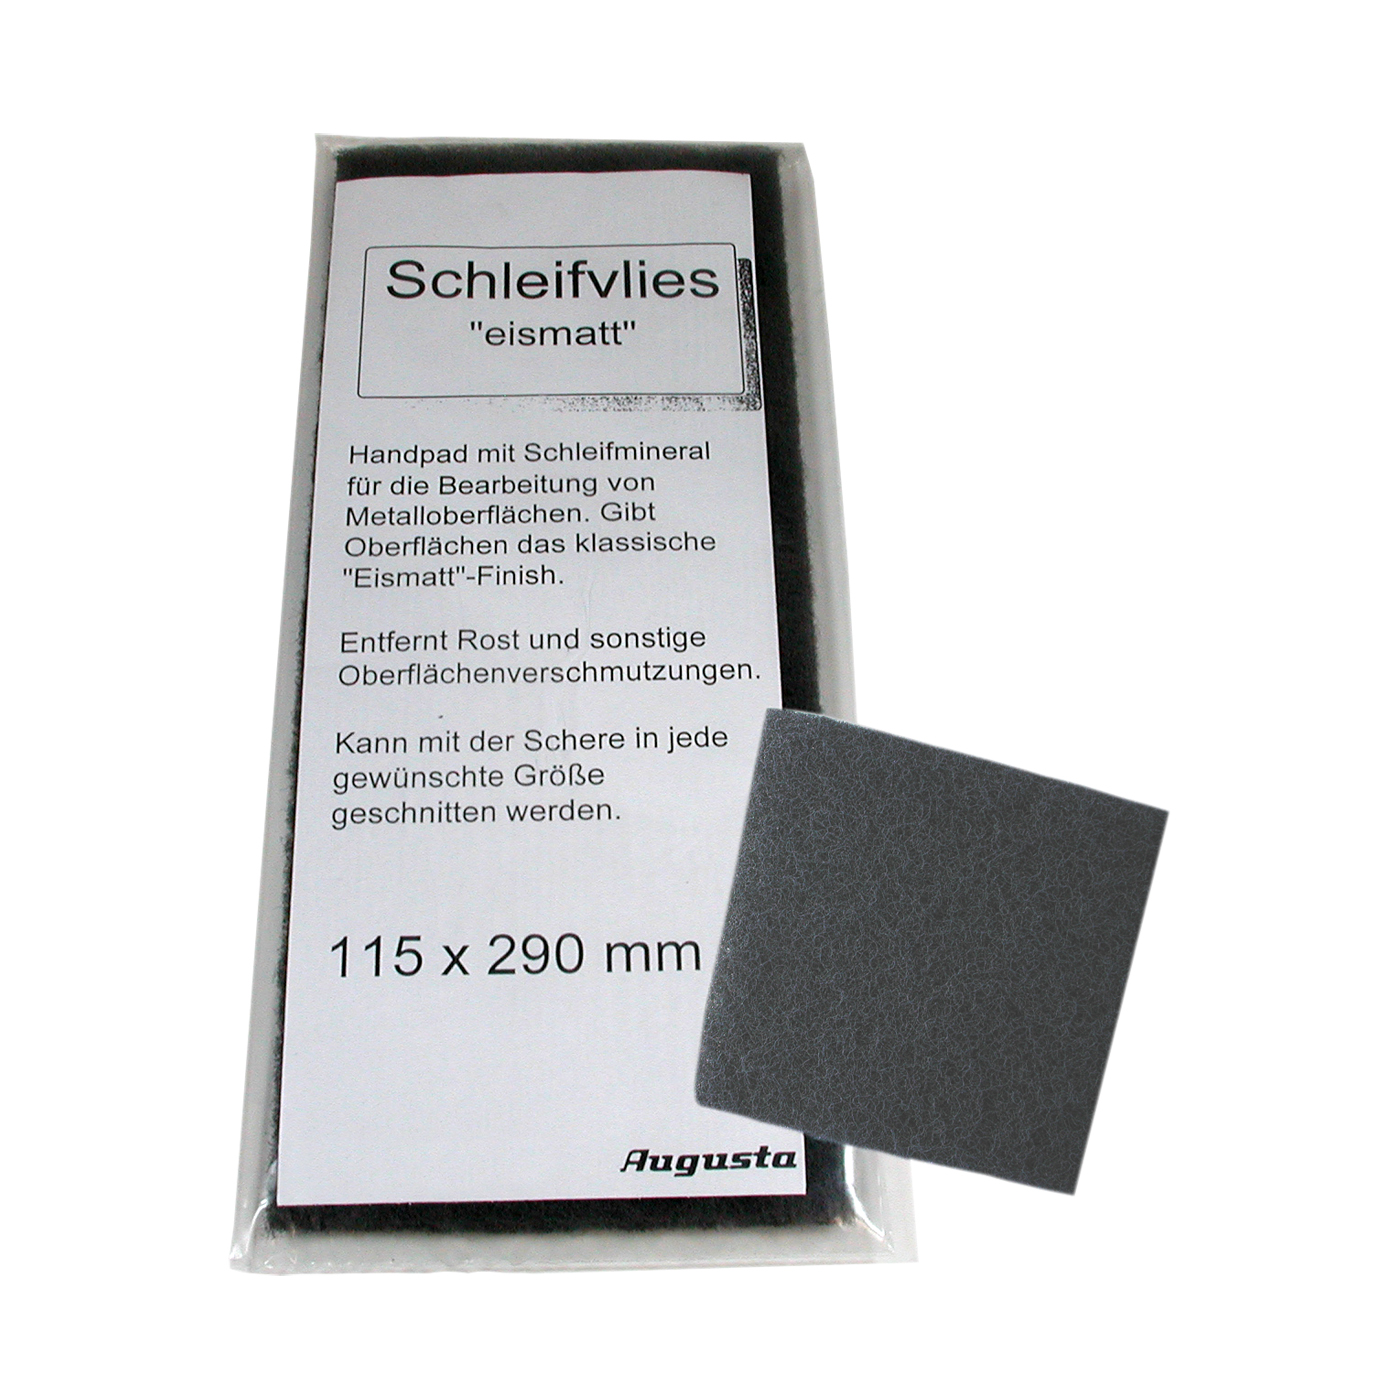 Schleifvlies, Handpad, grob, 115 x 290 mm - 1 Stück